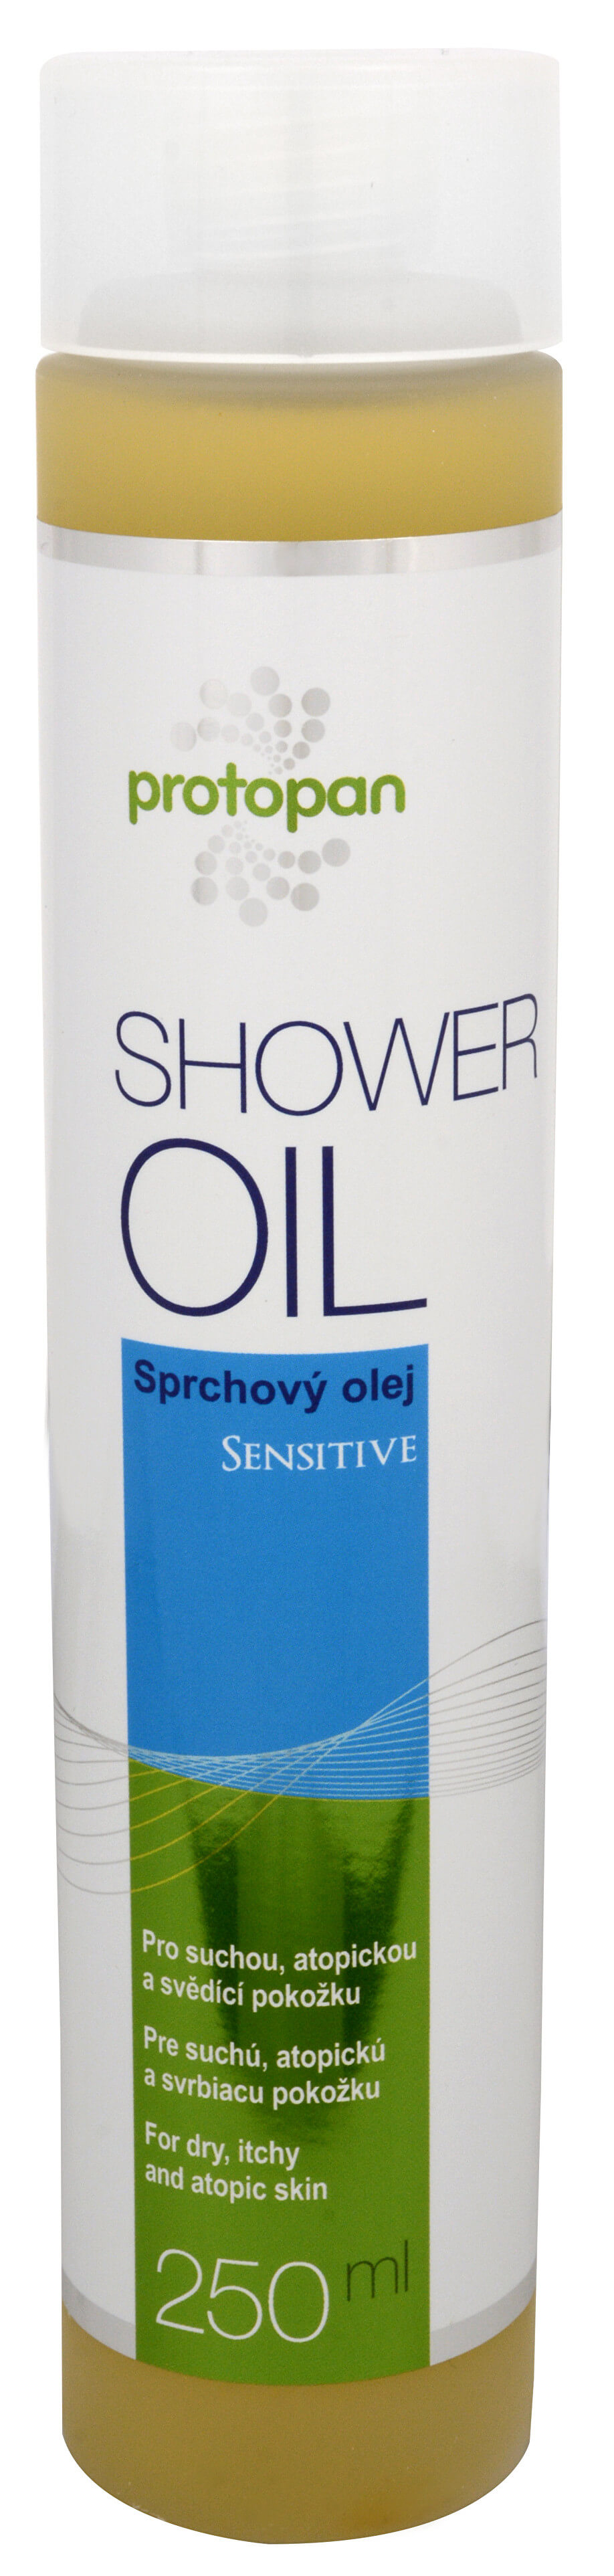 Shower Oil Sensitive 250 ml